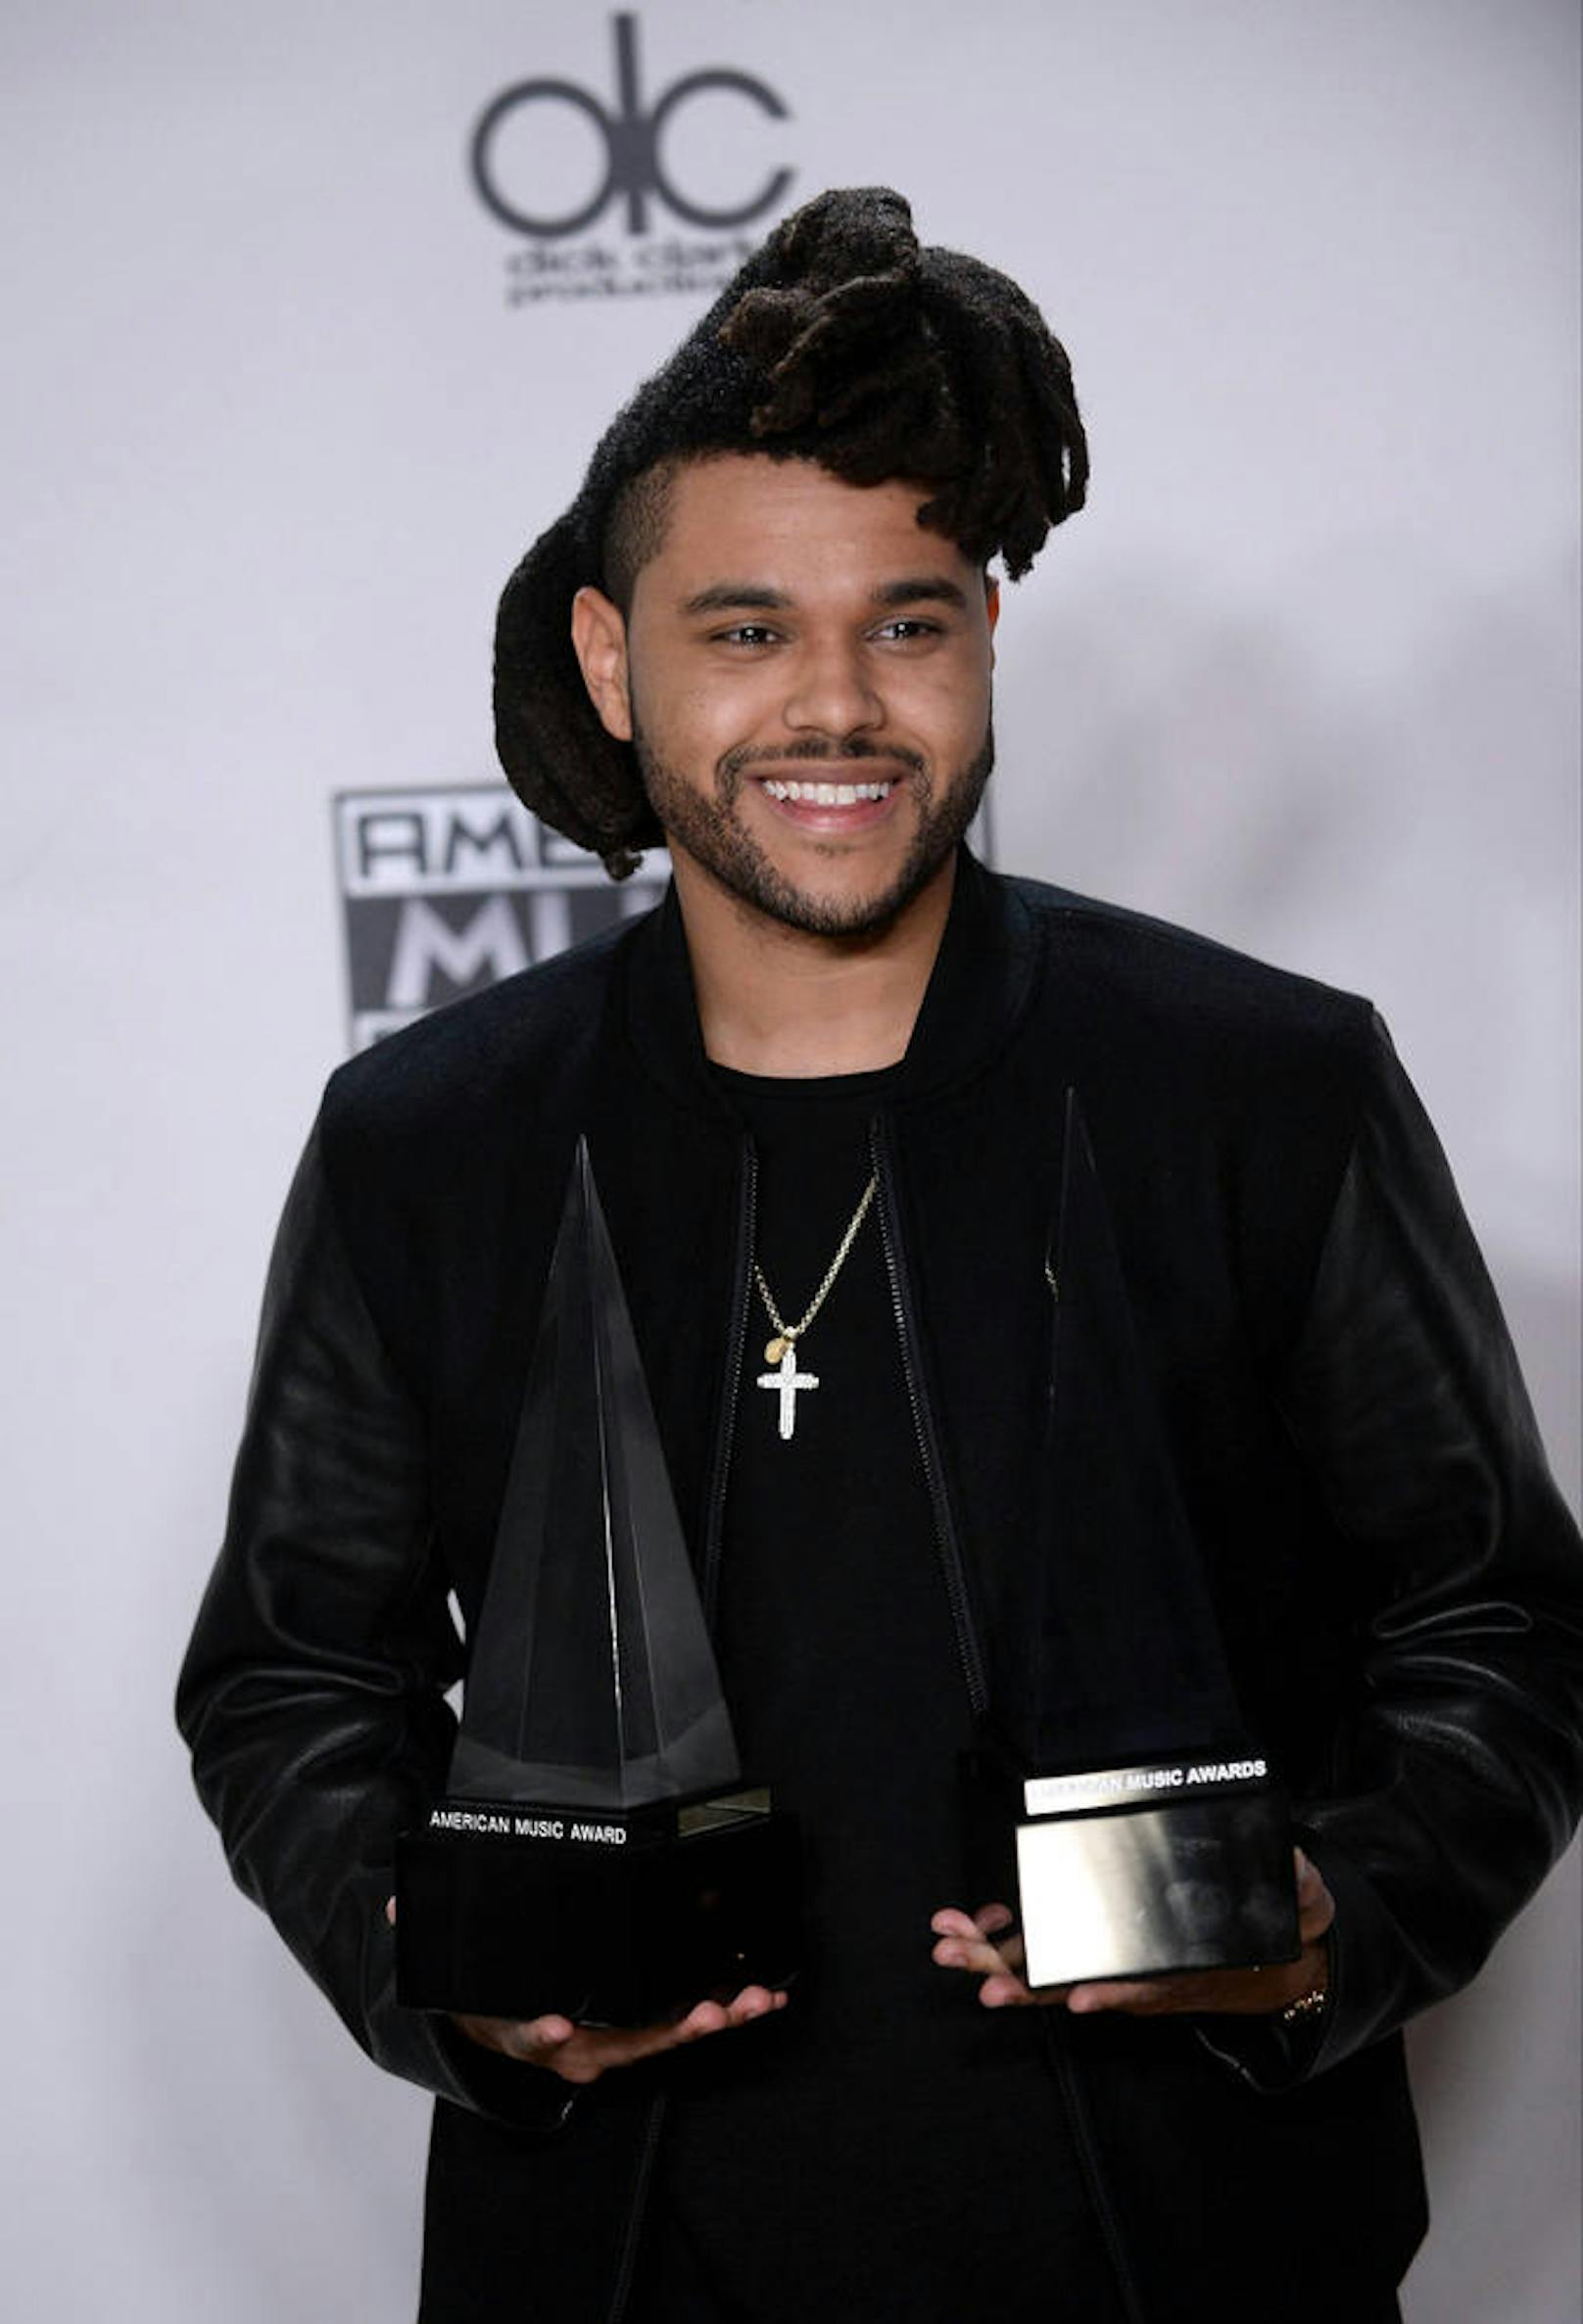 The Weeknd gewann in den Kategorien "Favorite Soul/R&B Male Artist" und "Favorite Soul/R&B Album".